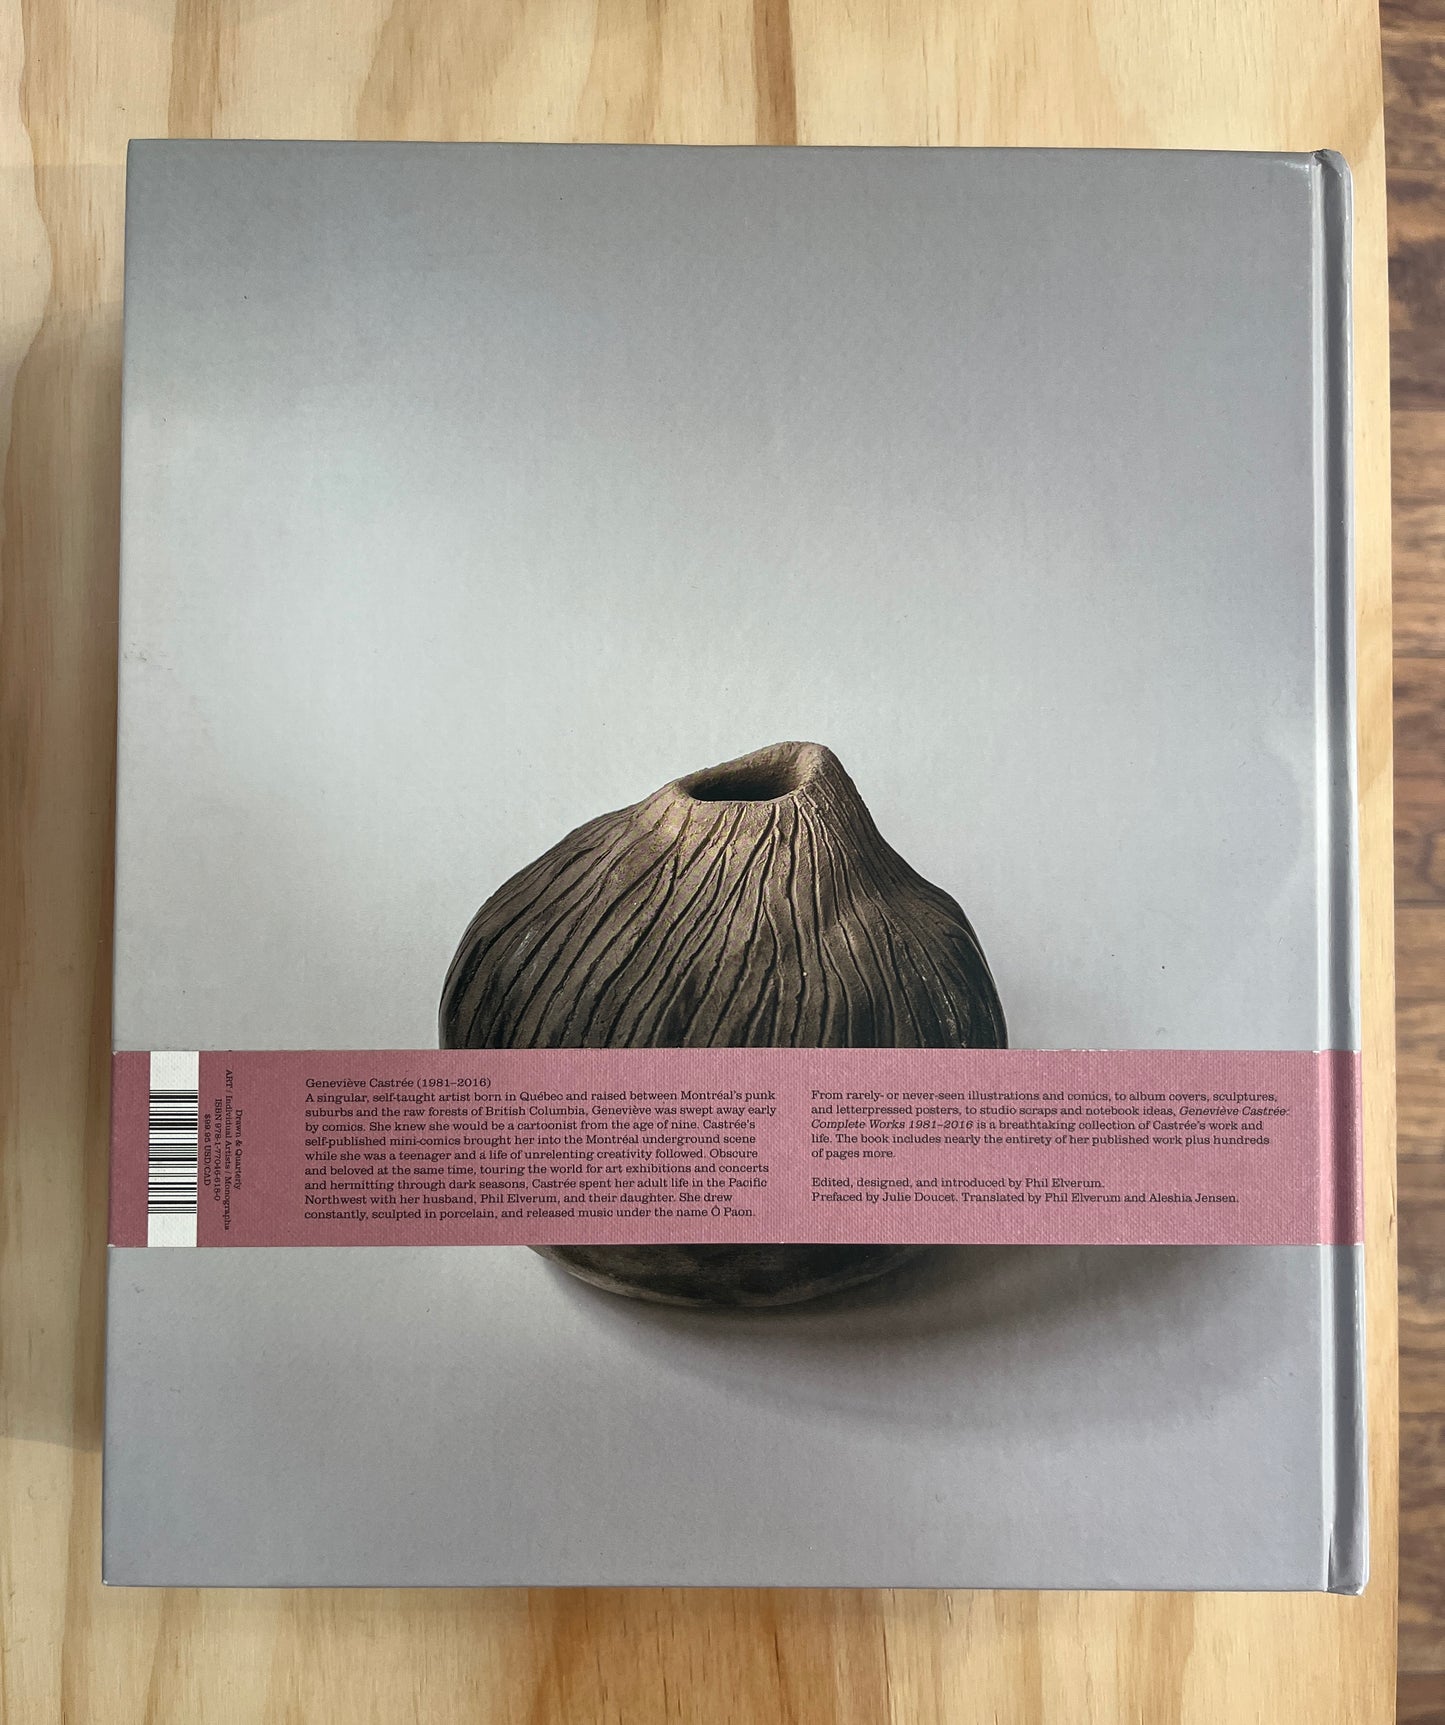 Geneviève Castrée: Complete Works 1981-2016